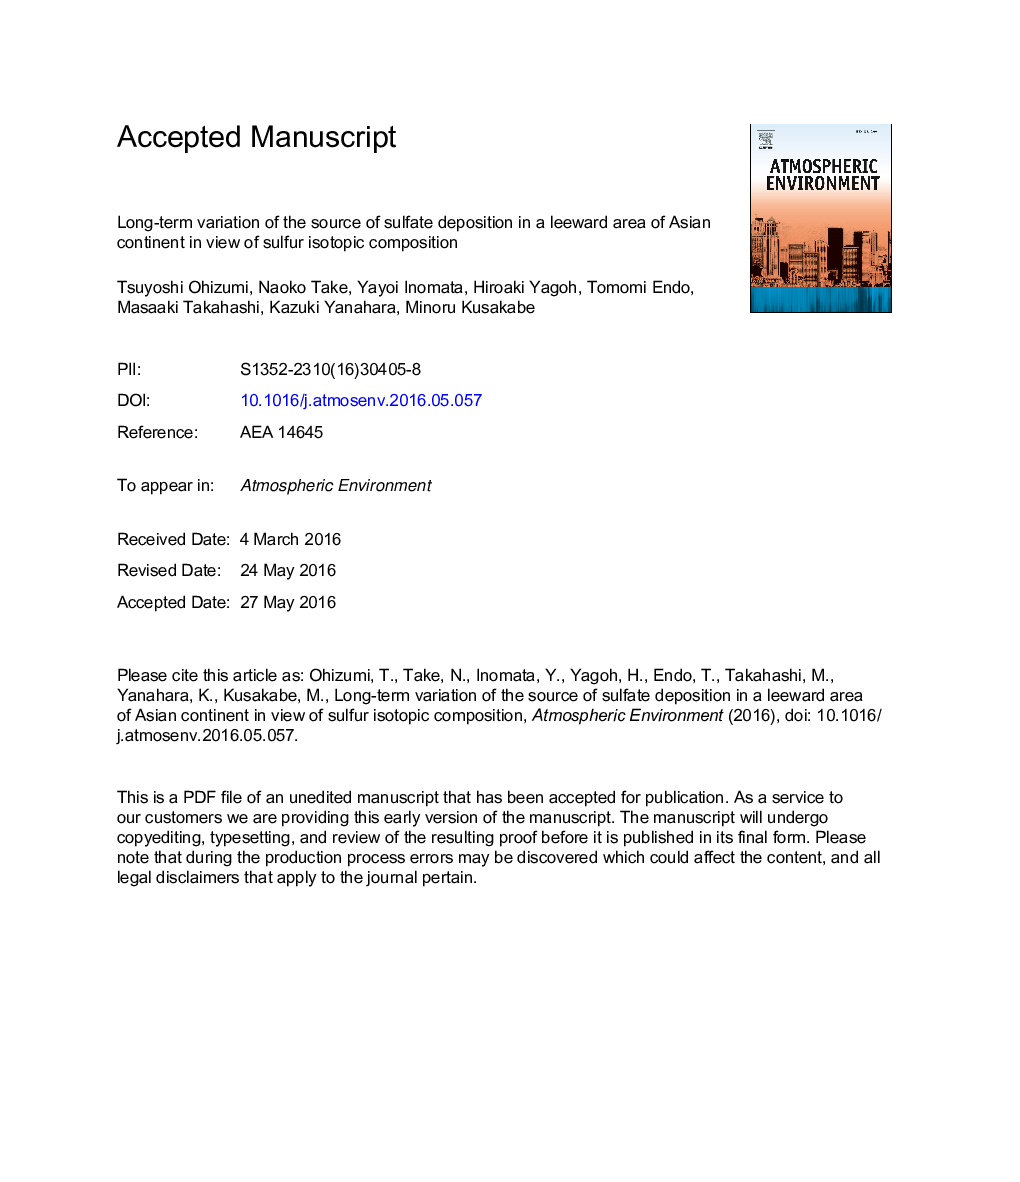 تغییرات درازمدت منبع رسوب سولفات در یک ناحیه ای از قاره آسیا با توجه به ترکیبات ایزوتوپ گوگرد 